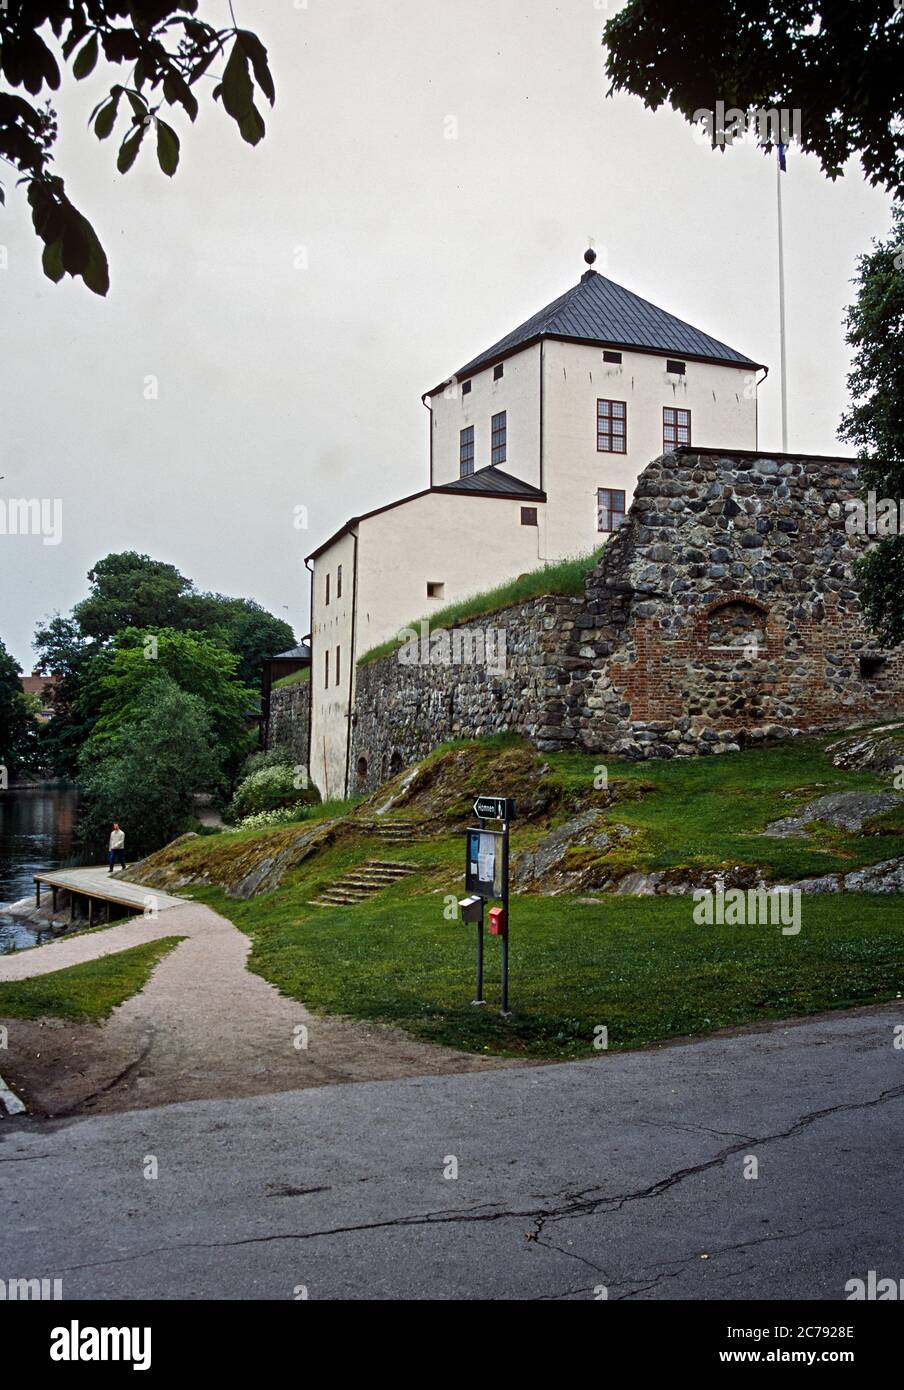 The old castle Nyköpingshus in Nyköping, Sweden Stock Photo